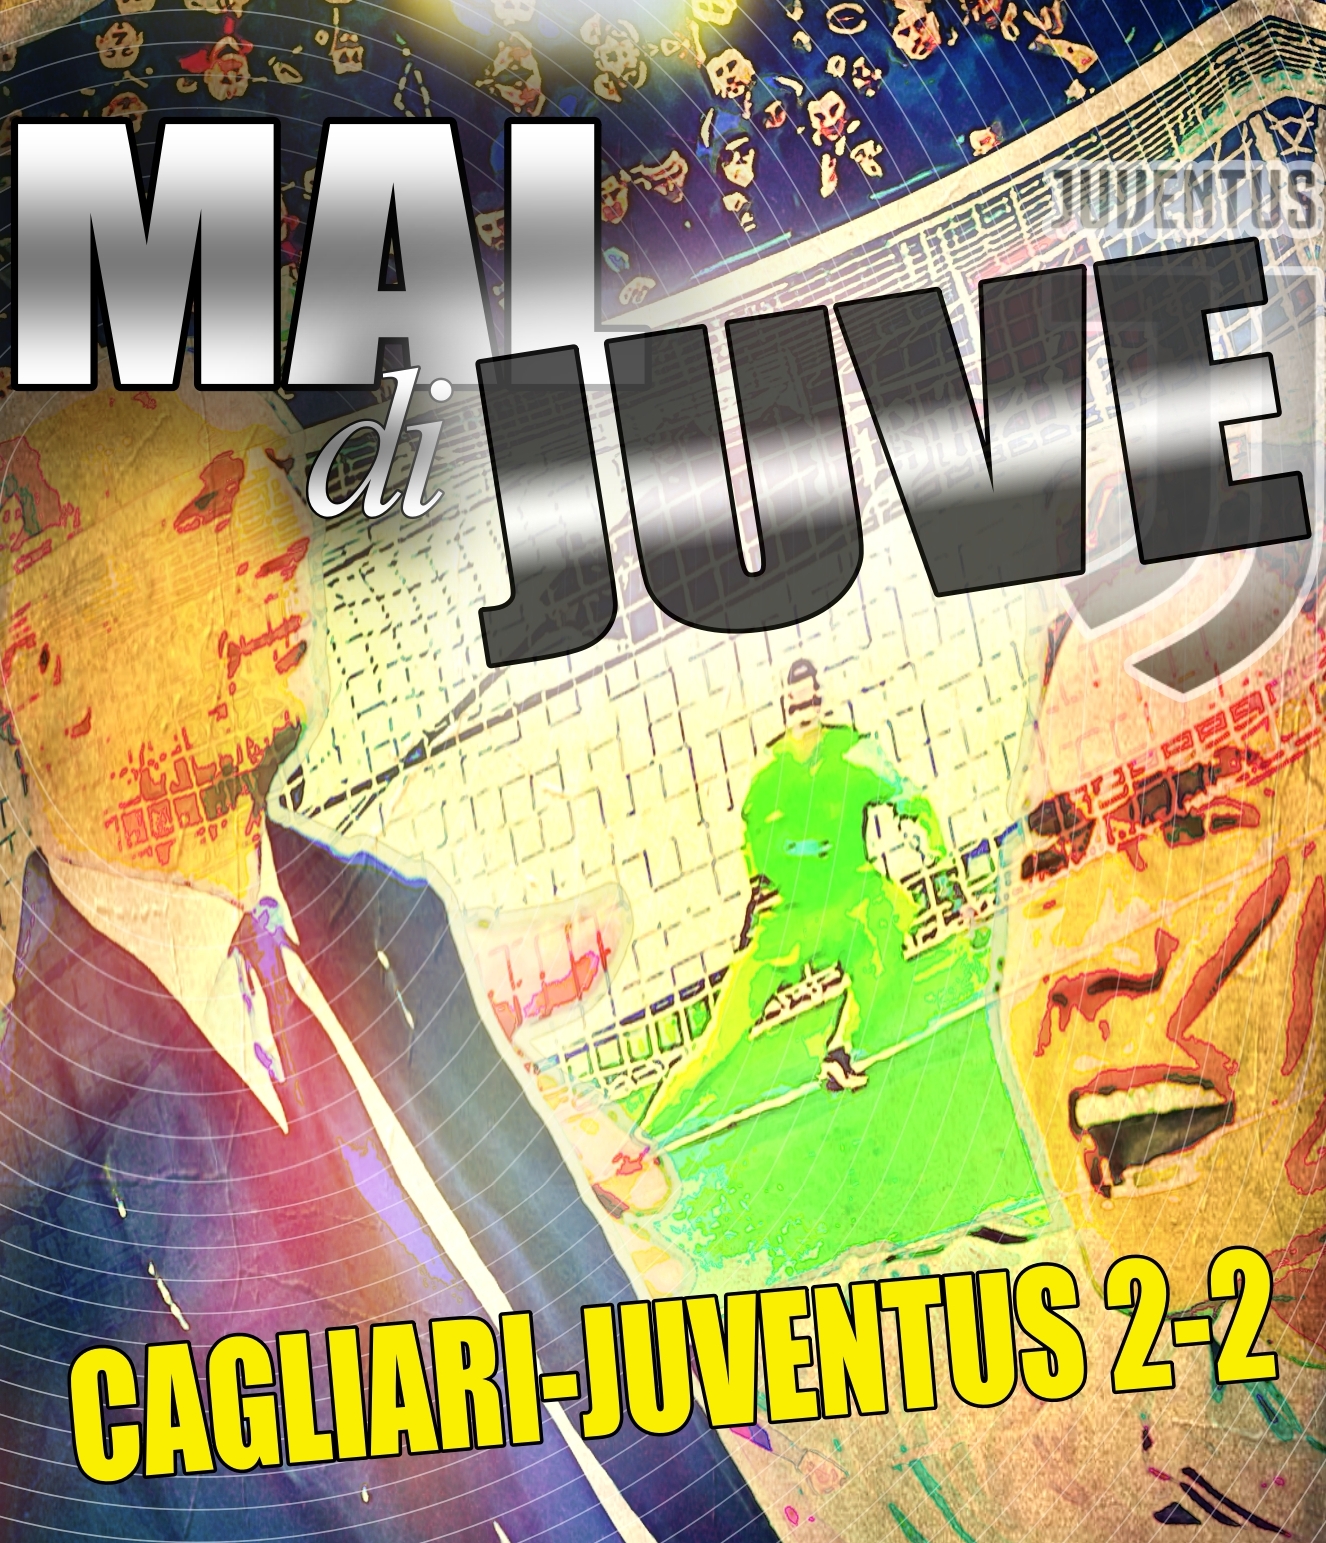 Cagliari - Juventus 2-2, Cagliari avanti con due rigori, poi la Juve rimonta con Vlahovic e un autogol del Cagliari